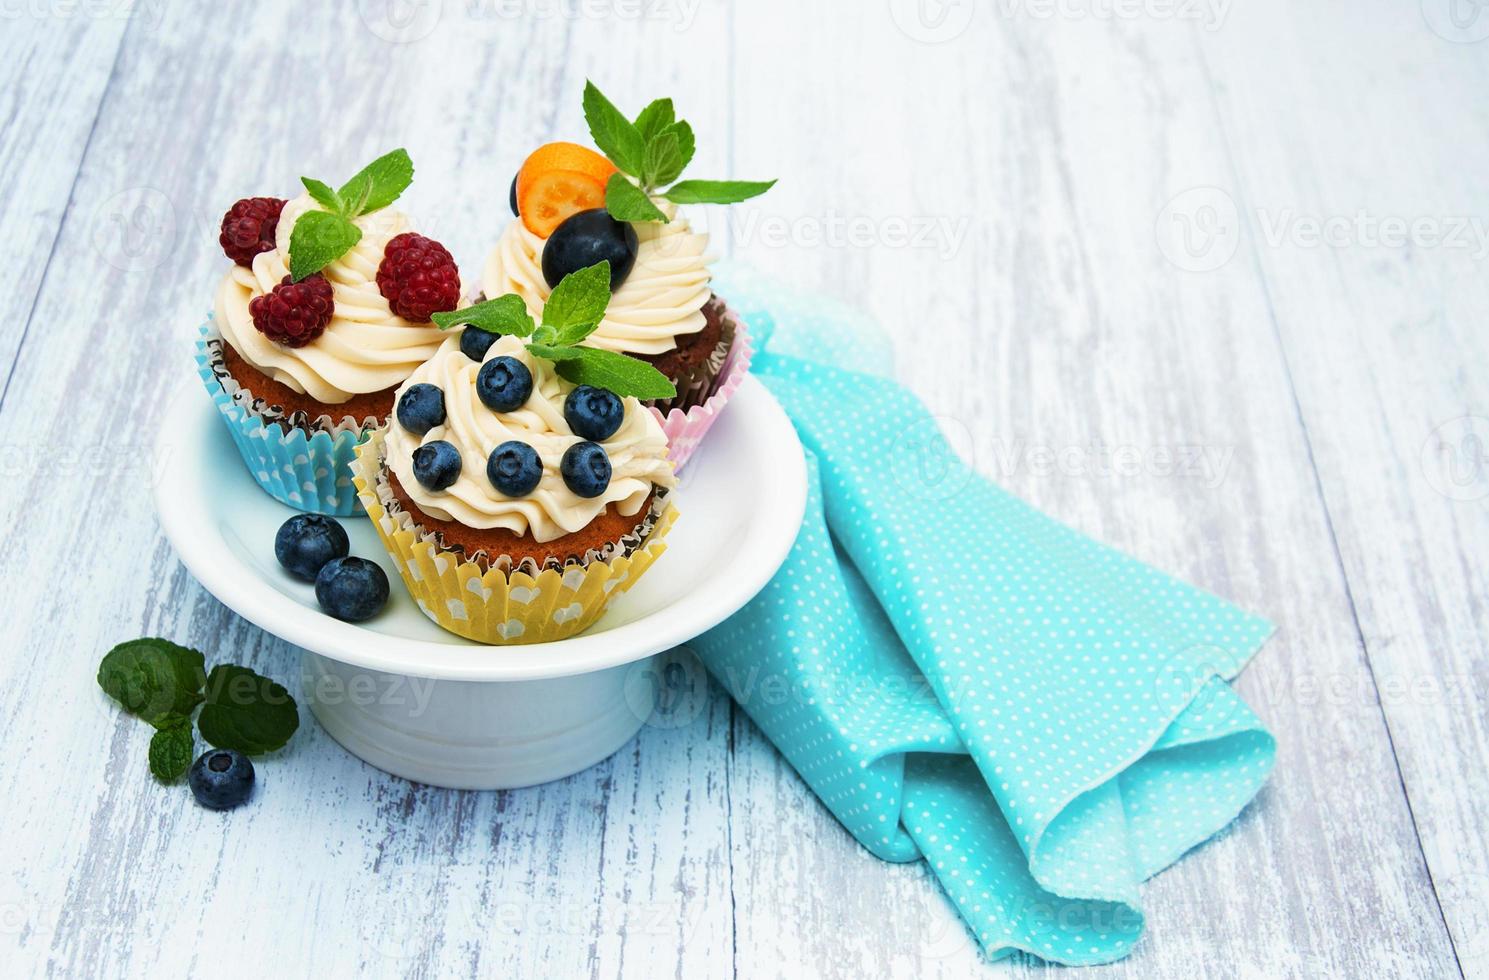 cupcakes com frutas frescas foto